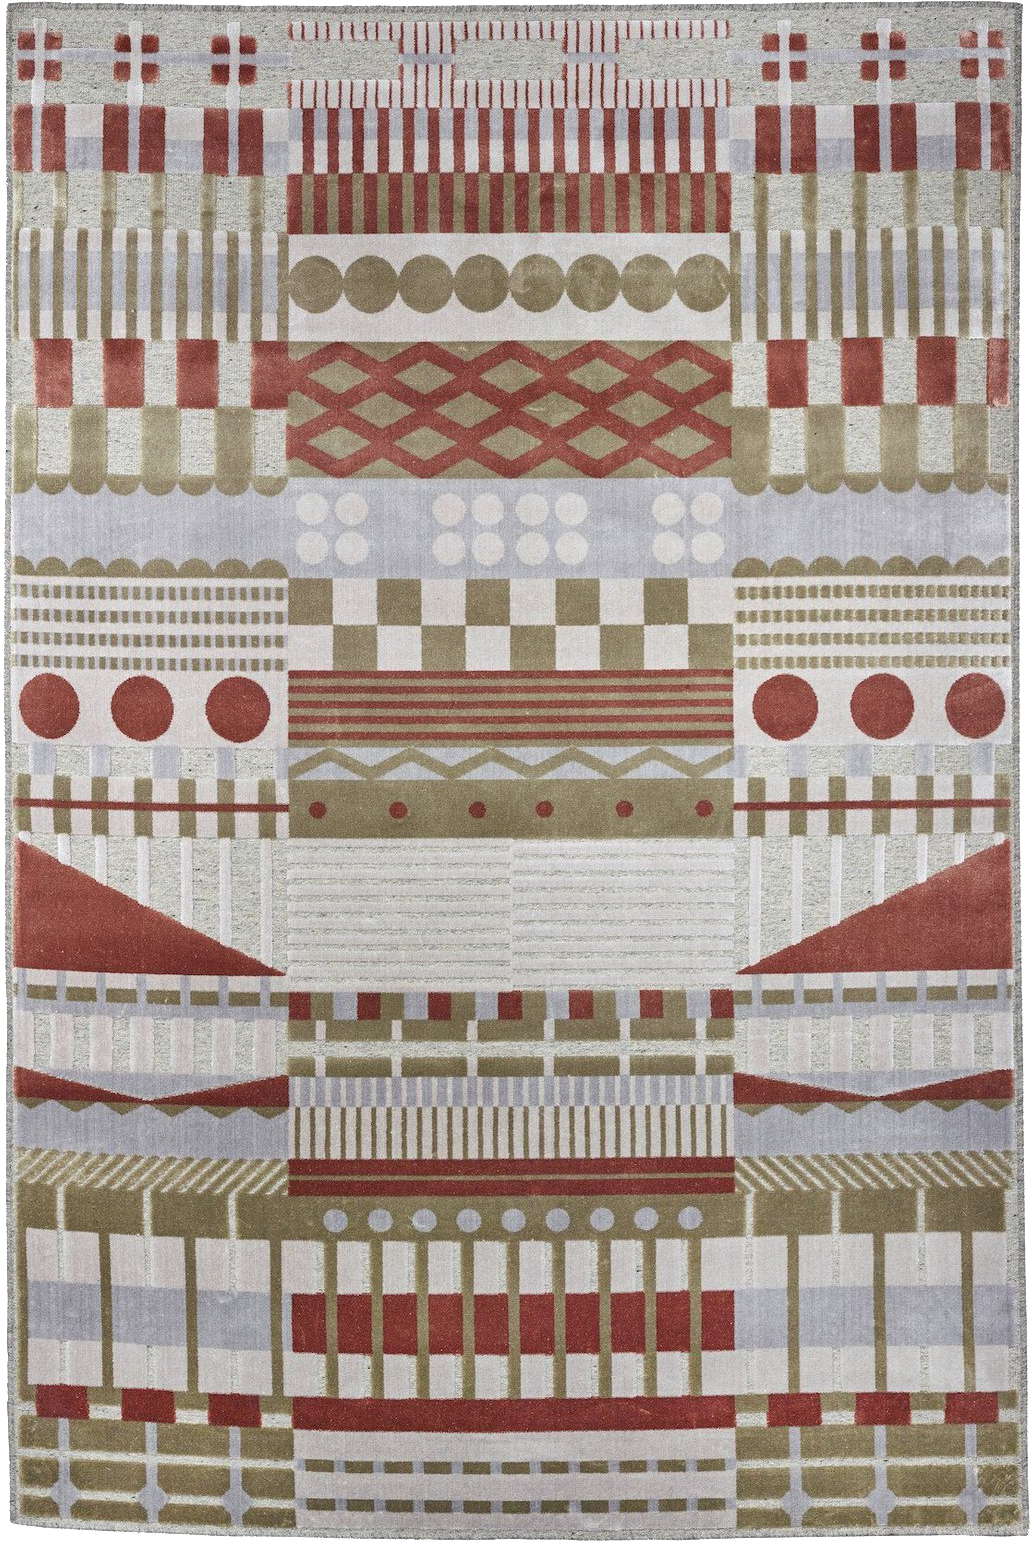 Gunta Teppich in Weiss / Rot / Grau / Gelbgrün präsentiert im Onlineshop von KAQTU Design AG. Teppich ist von ZigZagZurich